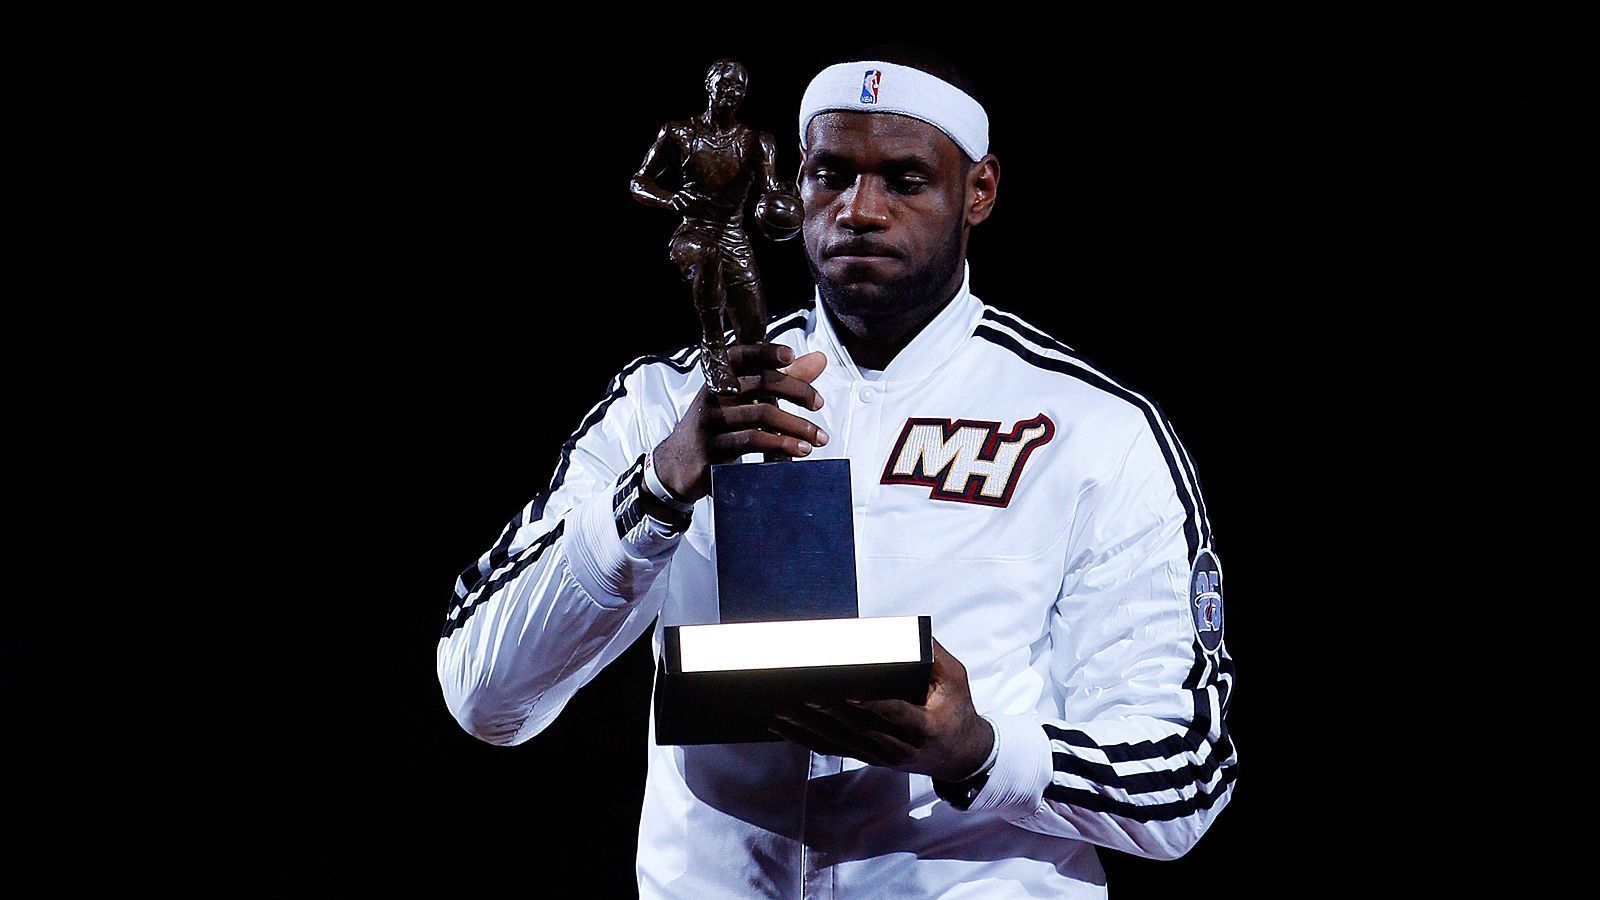 
                <strong>Wie wichtig sind individuelle Auszeichnungen?</strong><br>
                Michael Jordan wurde im Laufe seiner Karriere fünfmal zum "Most Valuable Player", also zum besten Spieler der Liga gewählt. LeBron James gilt in Expertenkreisen seit Jahren gemeinhin als Dominator der NBA, bringt es aber nur auf vier Auszeichnungen und wartet seit 2013 auf eine weitere Auszeichnung.
              